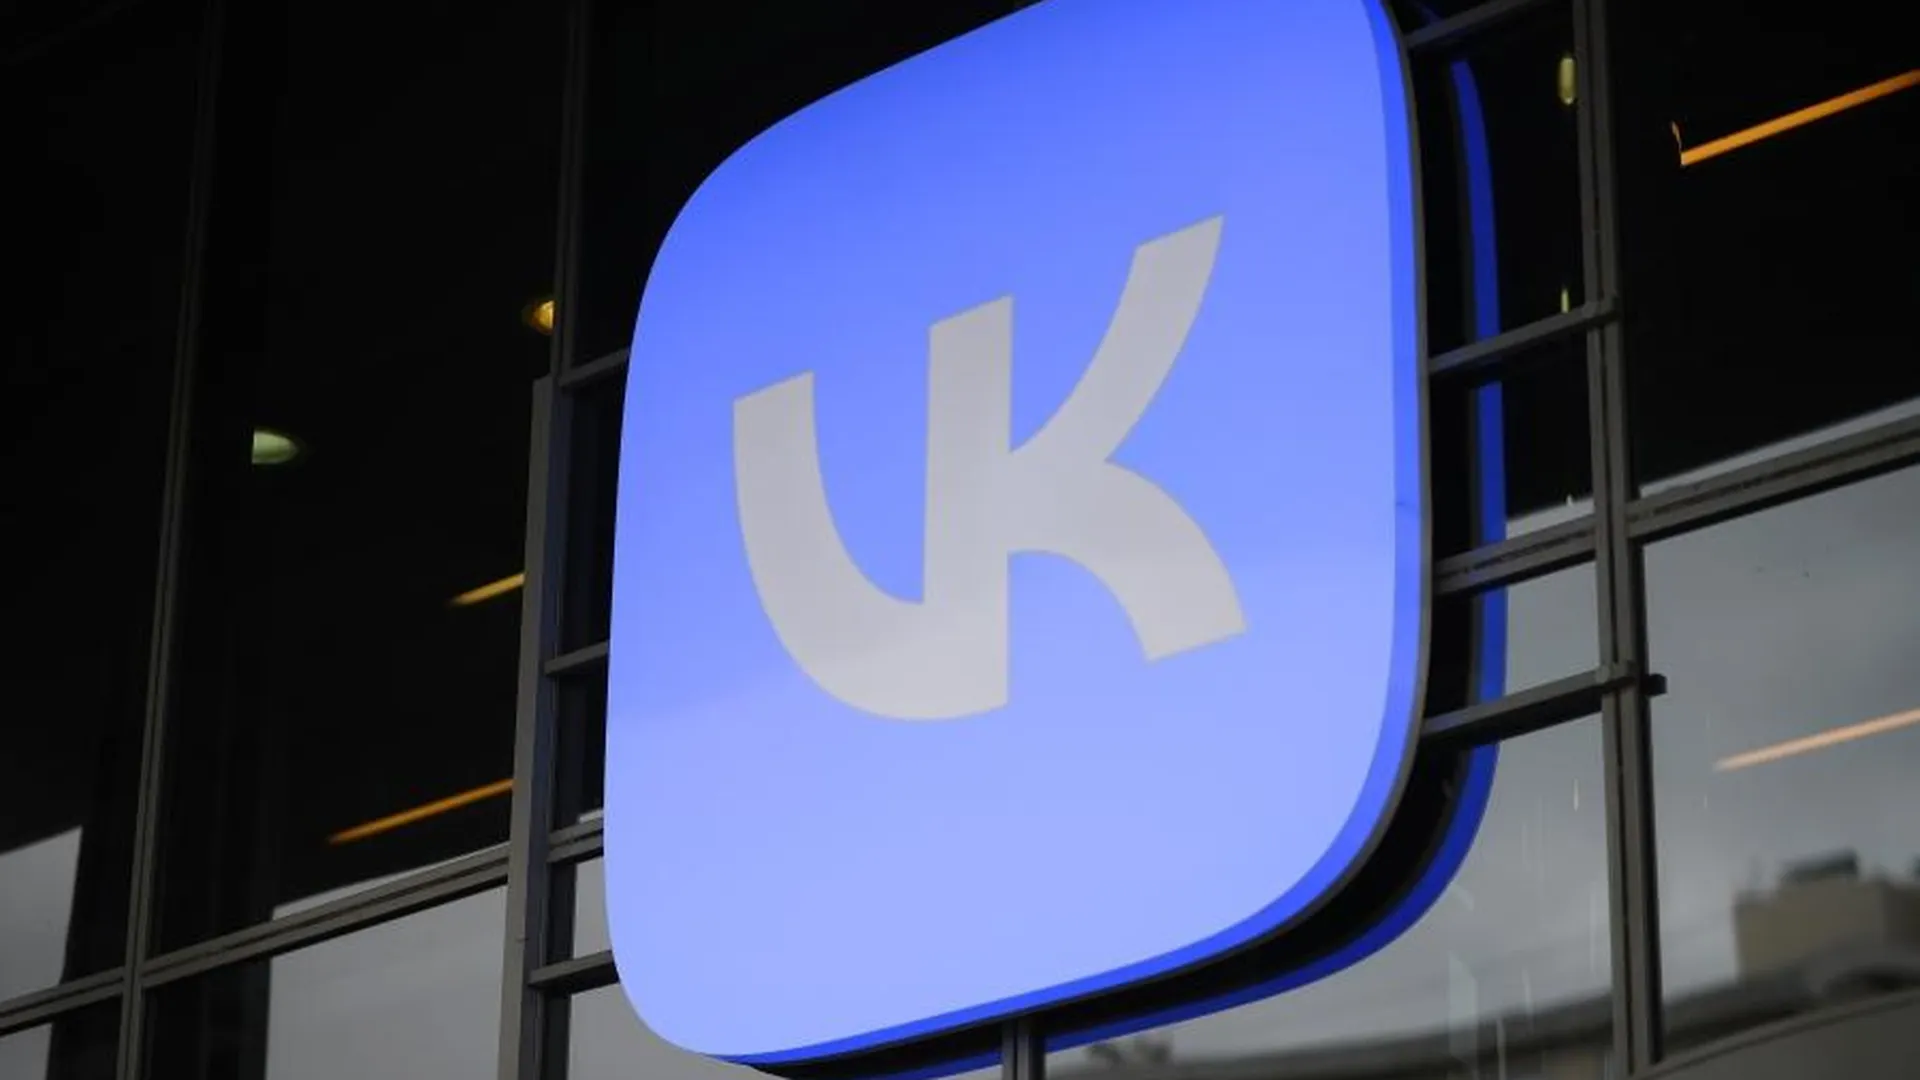 VK приобрела 40% билетного сервиса Intickets для улучшения «Пушкинской карты»